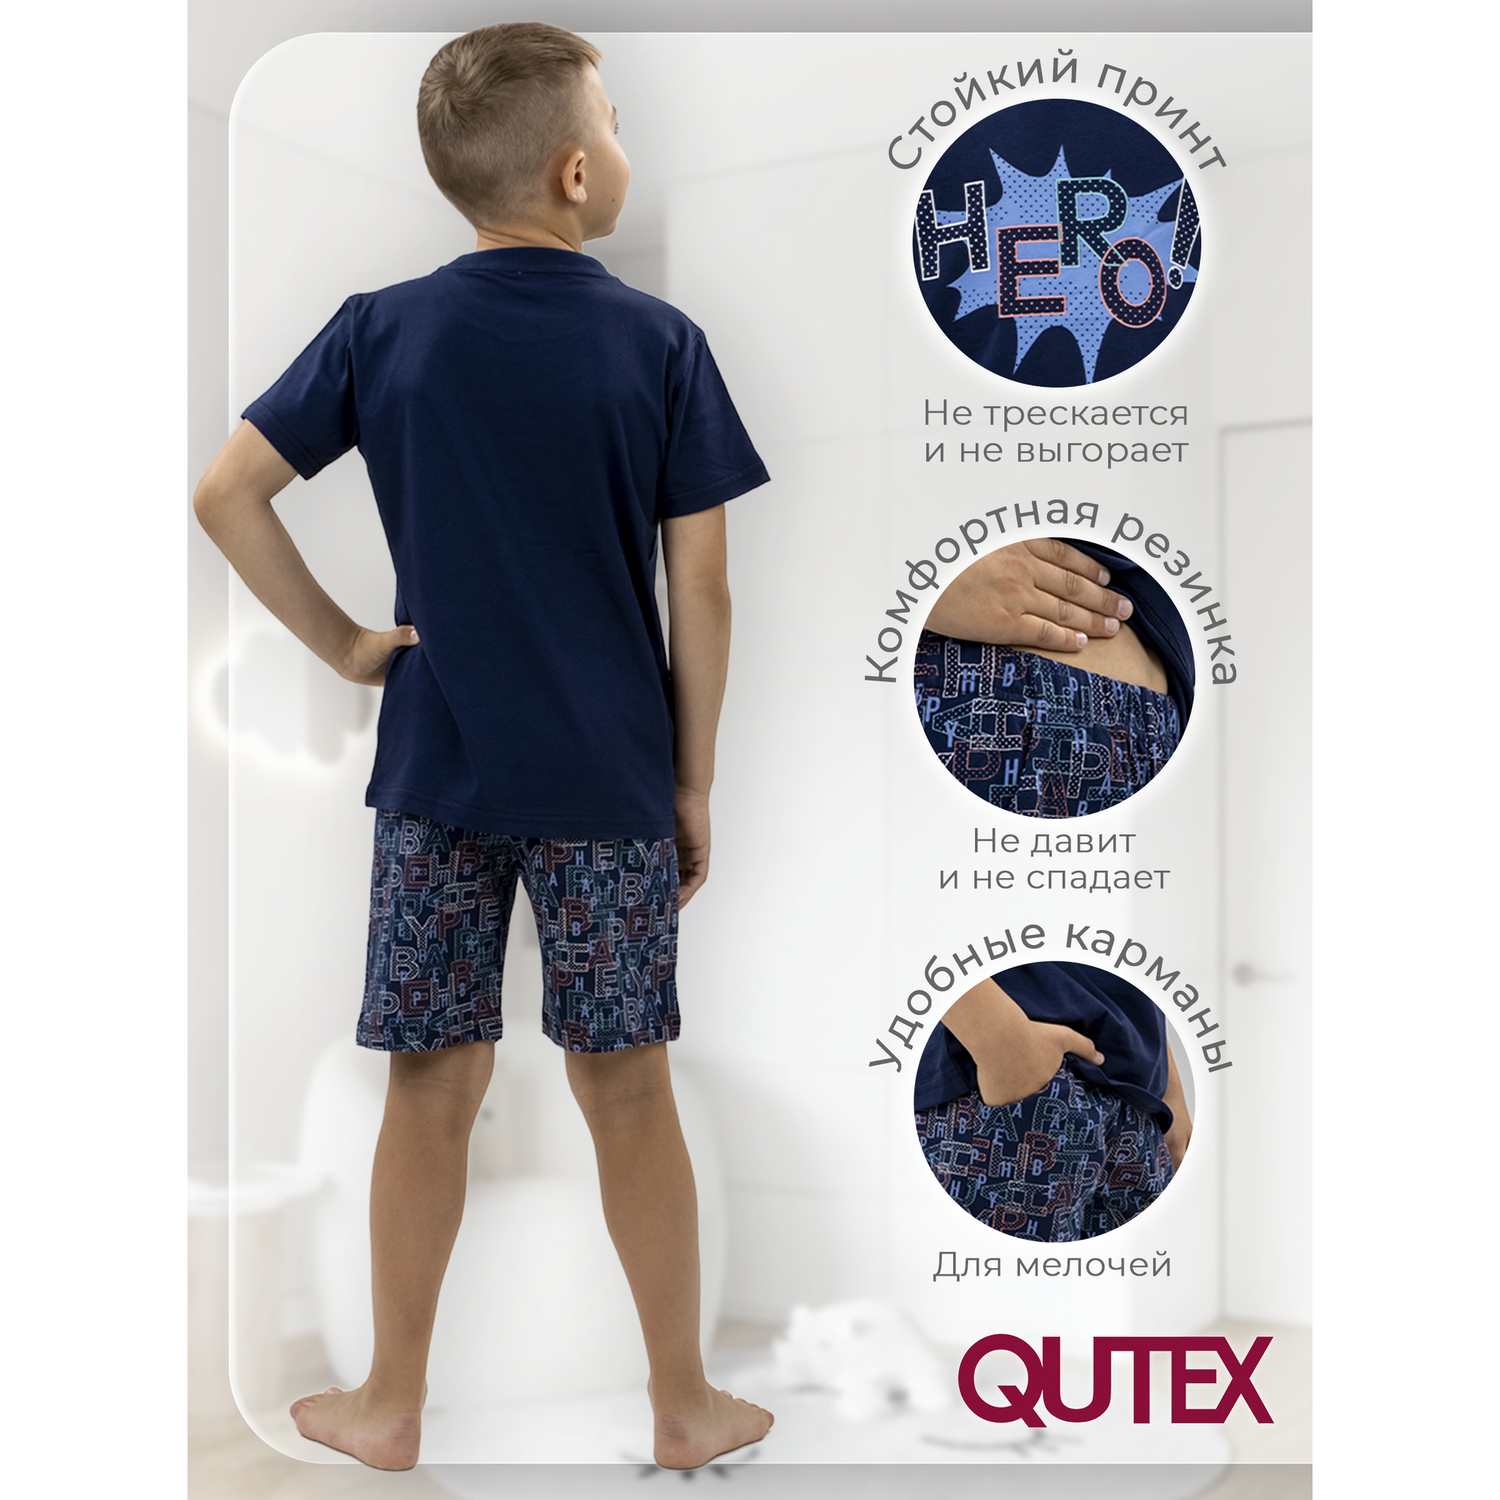 Пижама QUTEX 2401-003-1Q44 - фото 3